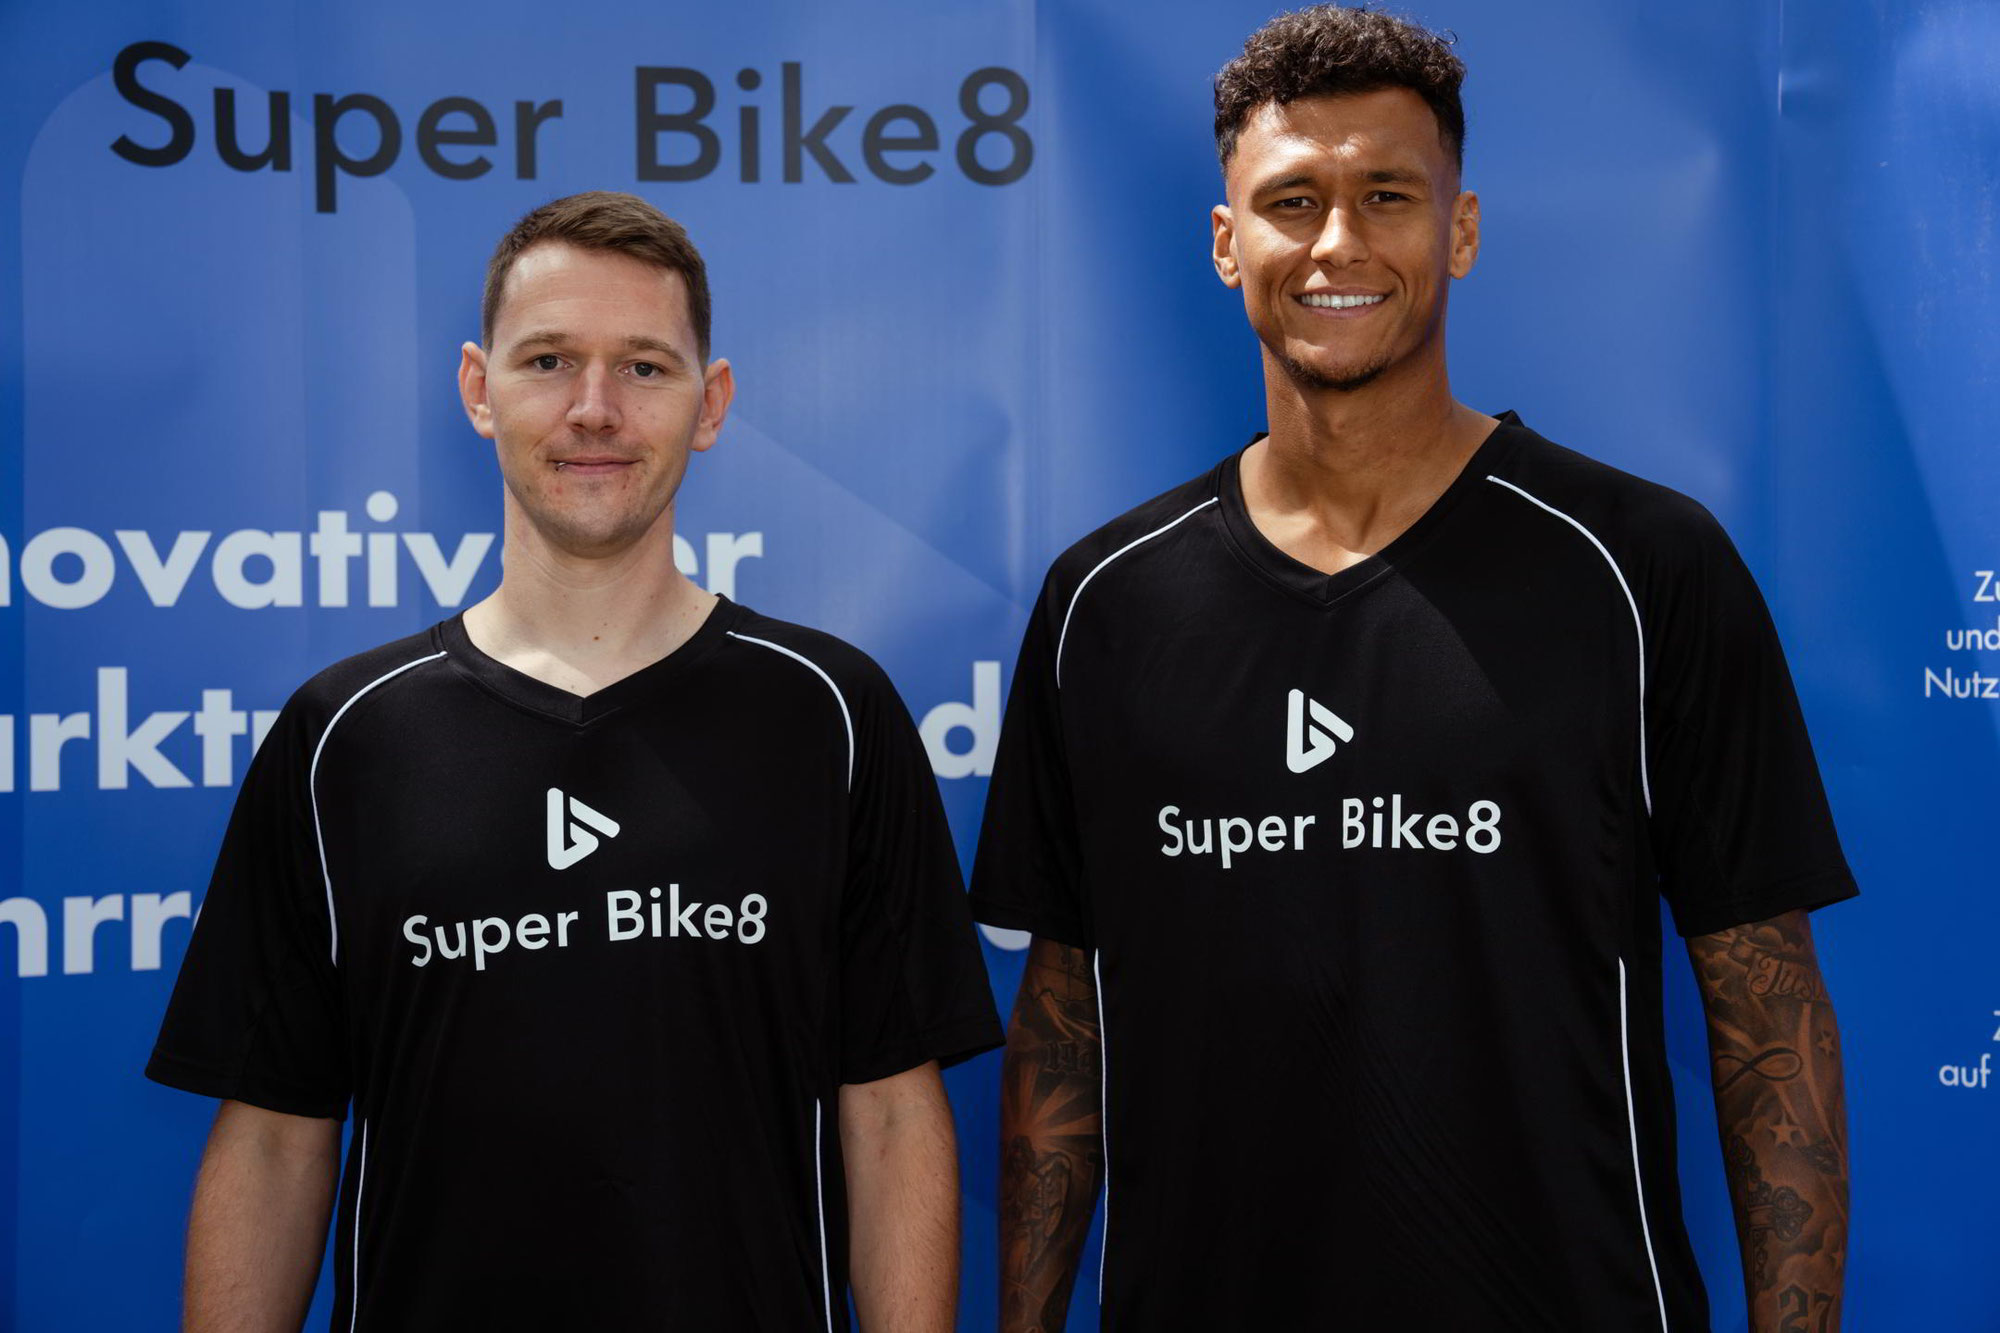 SuperBike8.de: Innovativer Marktplatz für Fahrräder und E-Bikes erobert die Branche